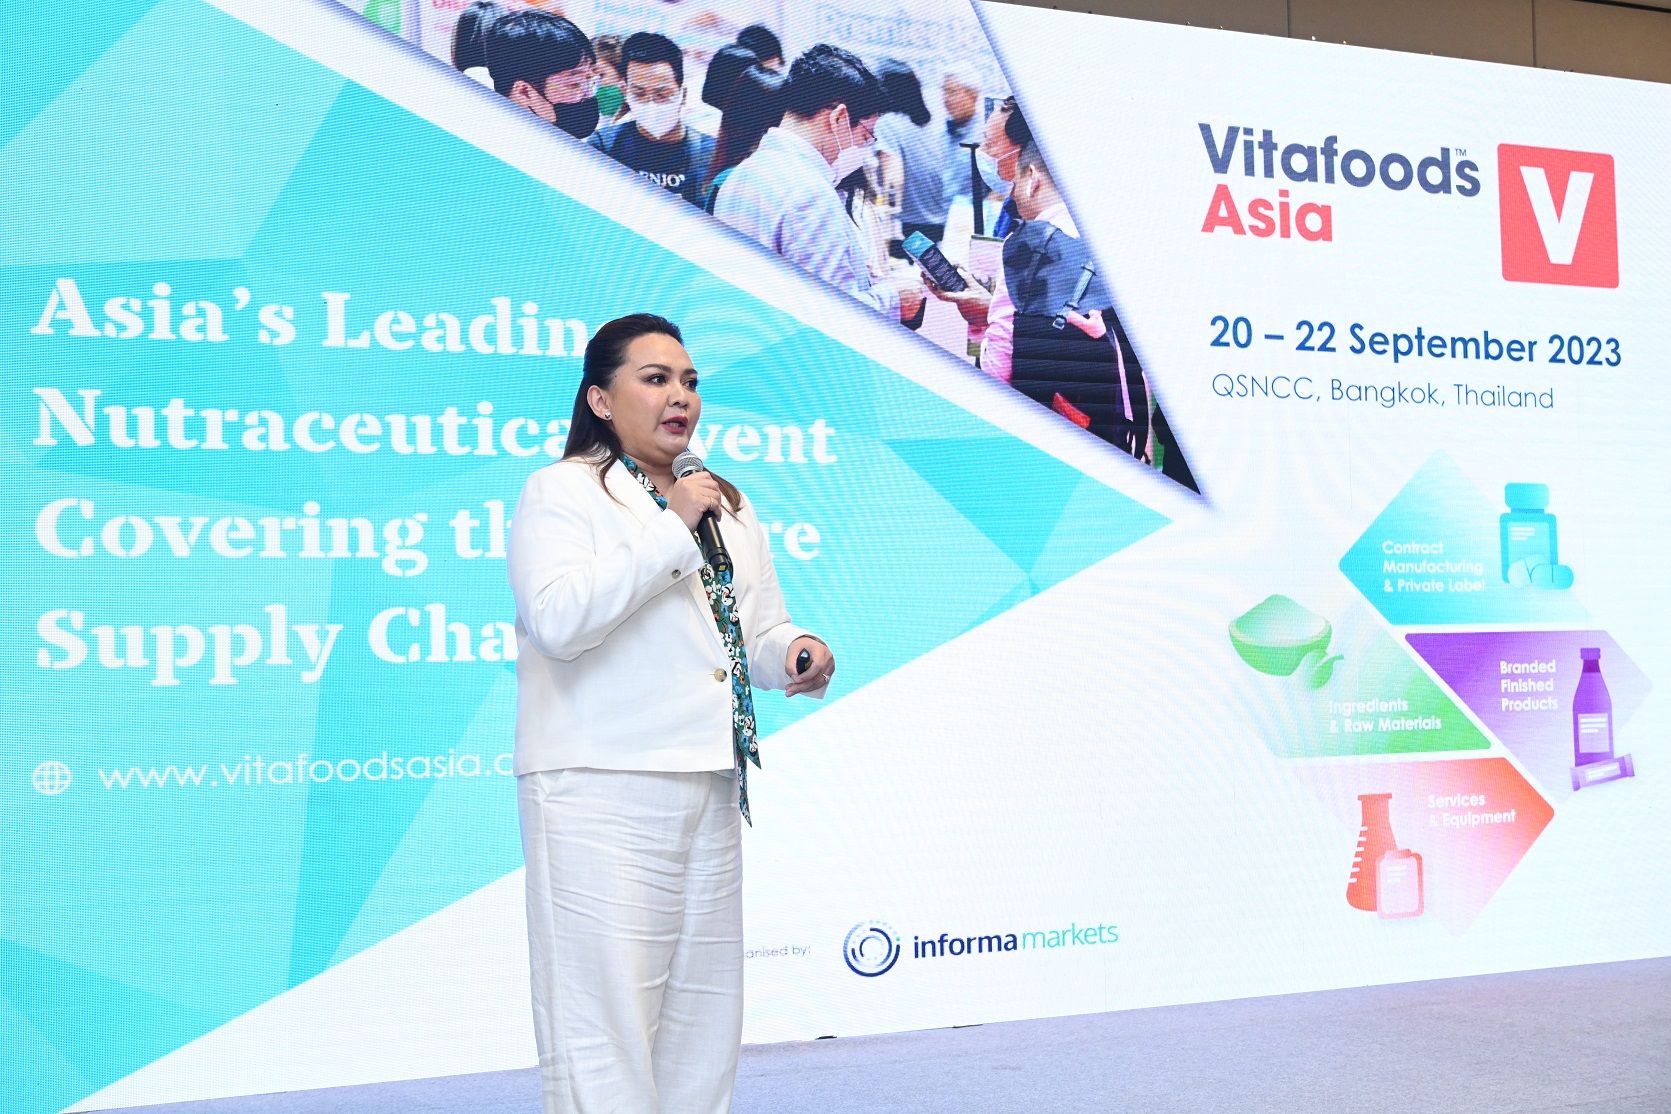 อินฟอร์มา มาร์เก็ตส์ฯ ดันไทยสู่ฮับนวัตกรรมเสริมอาหารและสารสกัด จัดงาน ‘Vitafoods Asia 2023’ สร้างแต้มต่อธุรกิจเสริมอาหารด้วย ‘เทคโนโลยี-เครือข่าย’